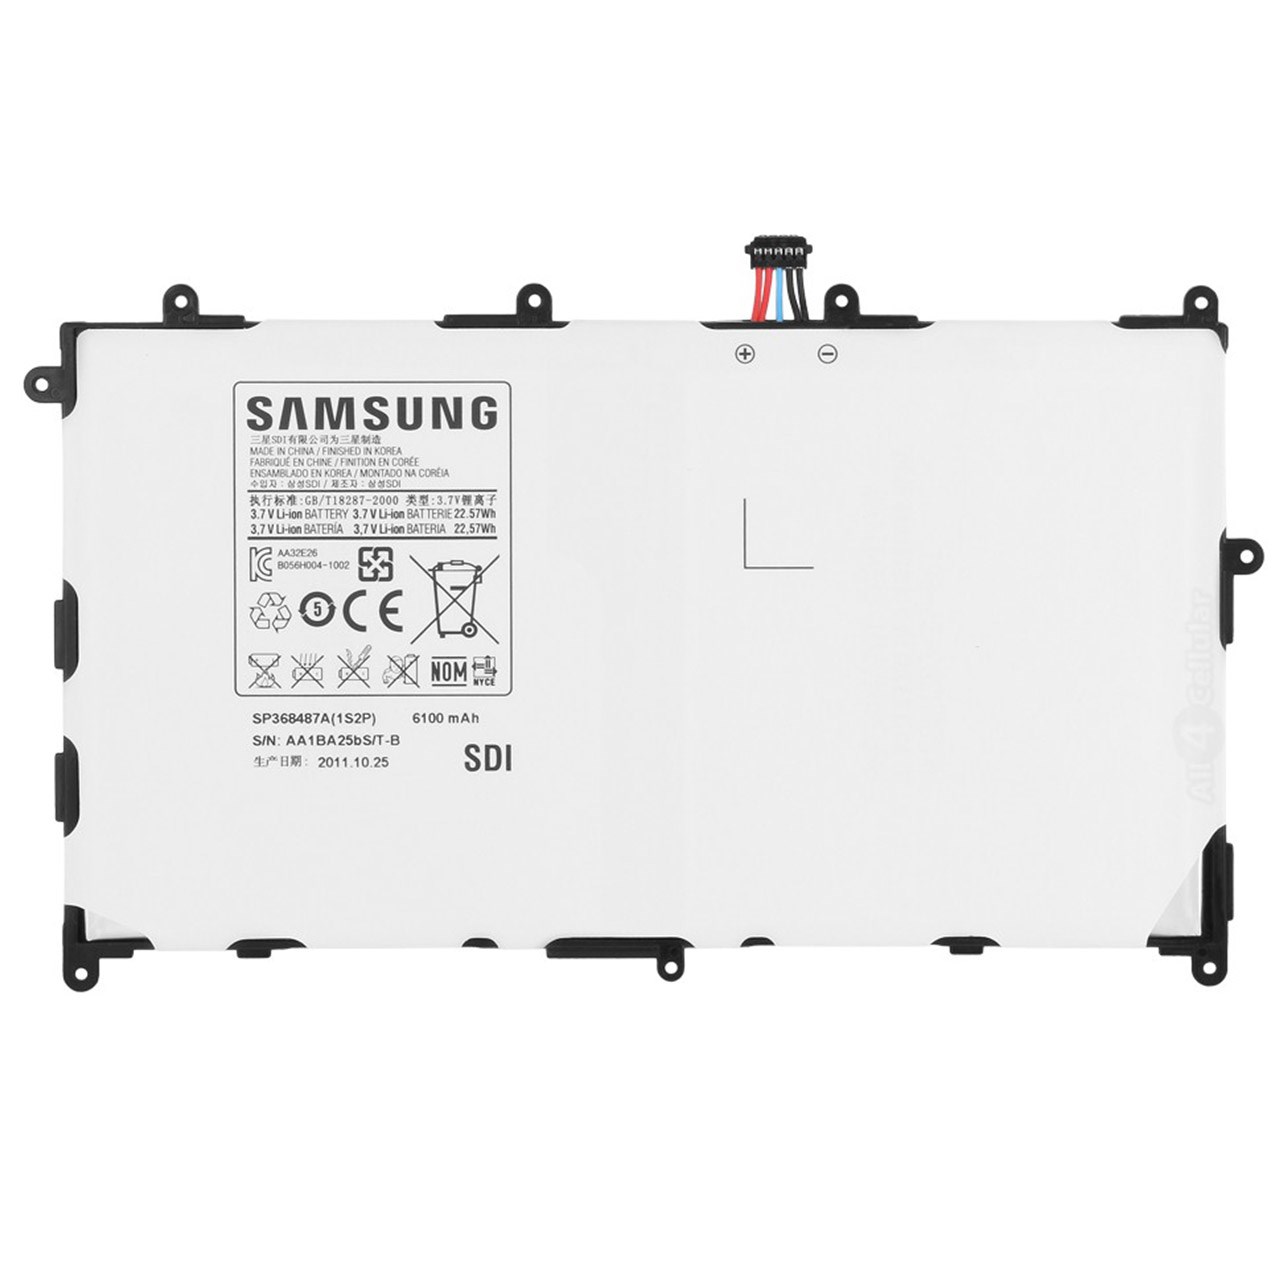 باتری تبلت مدل SP368487A با ظرفیت 6100 میلی آمپر مناسب برای Galaxy Tab 8.9